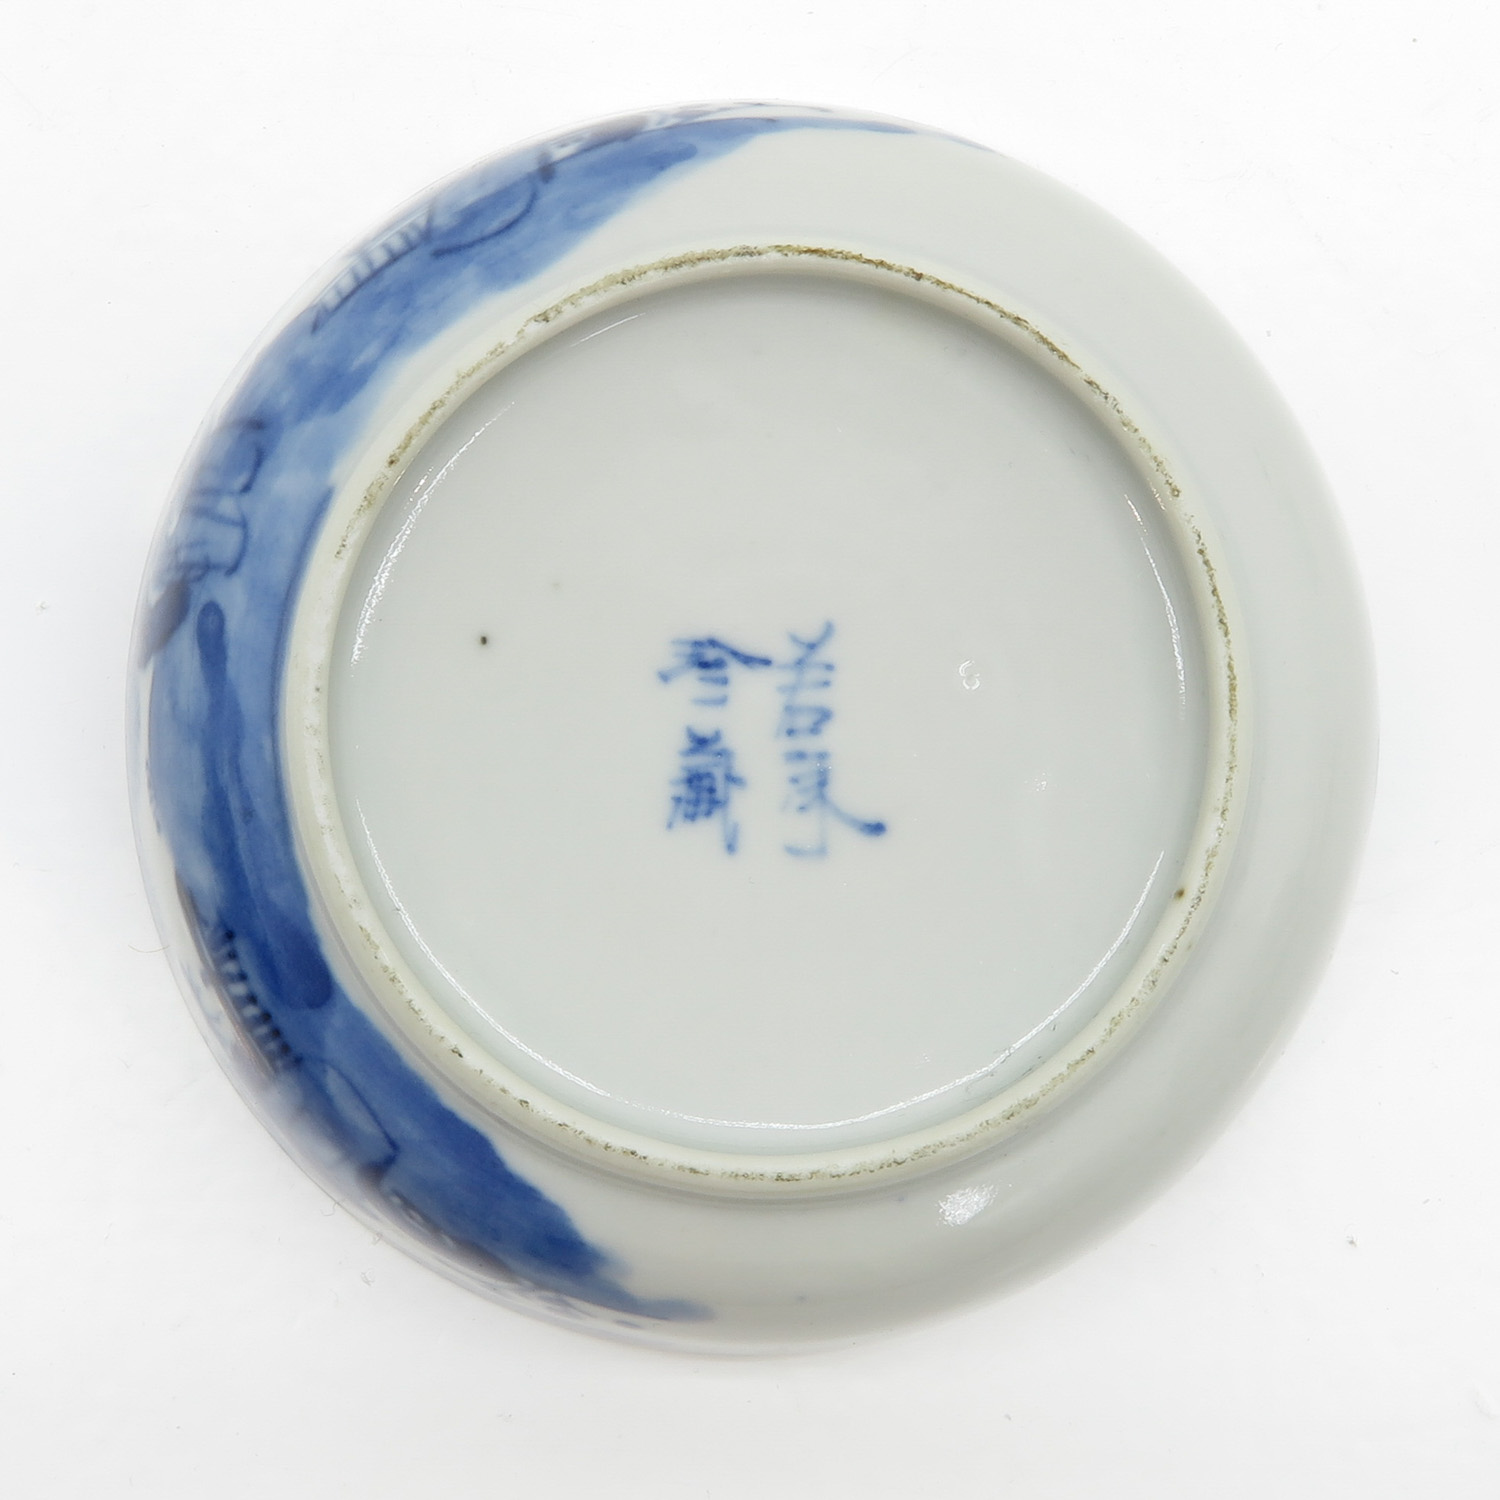 China Porcelain Bowl - Image 2 of 4